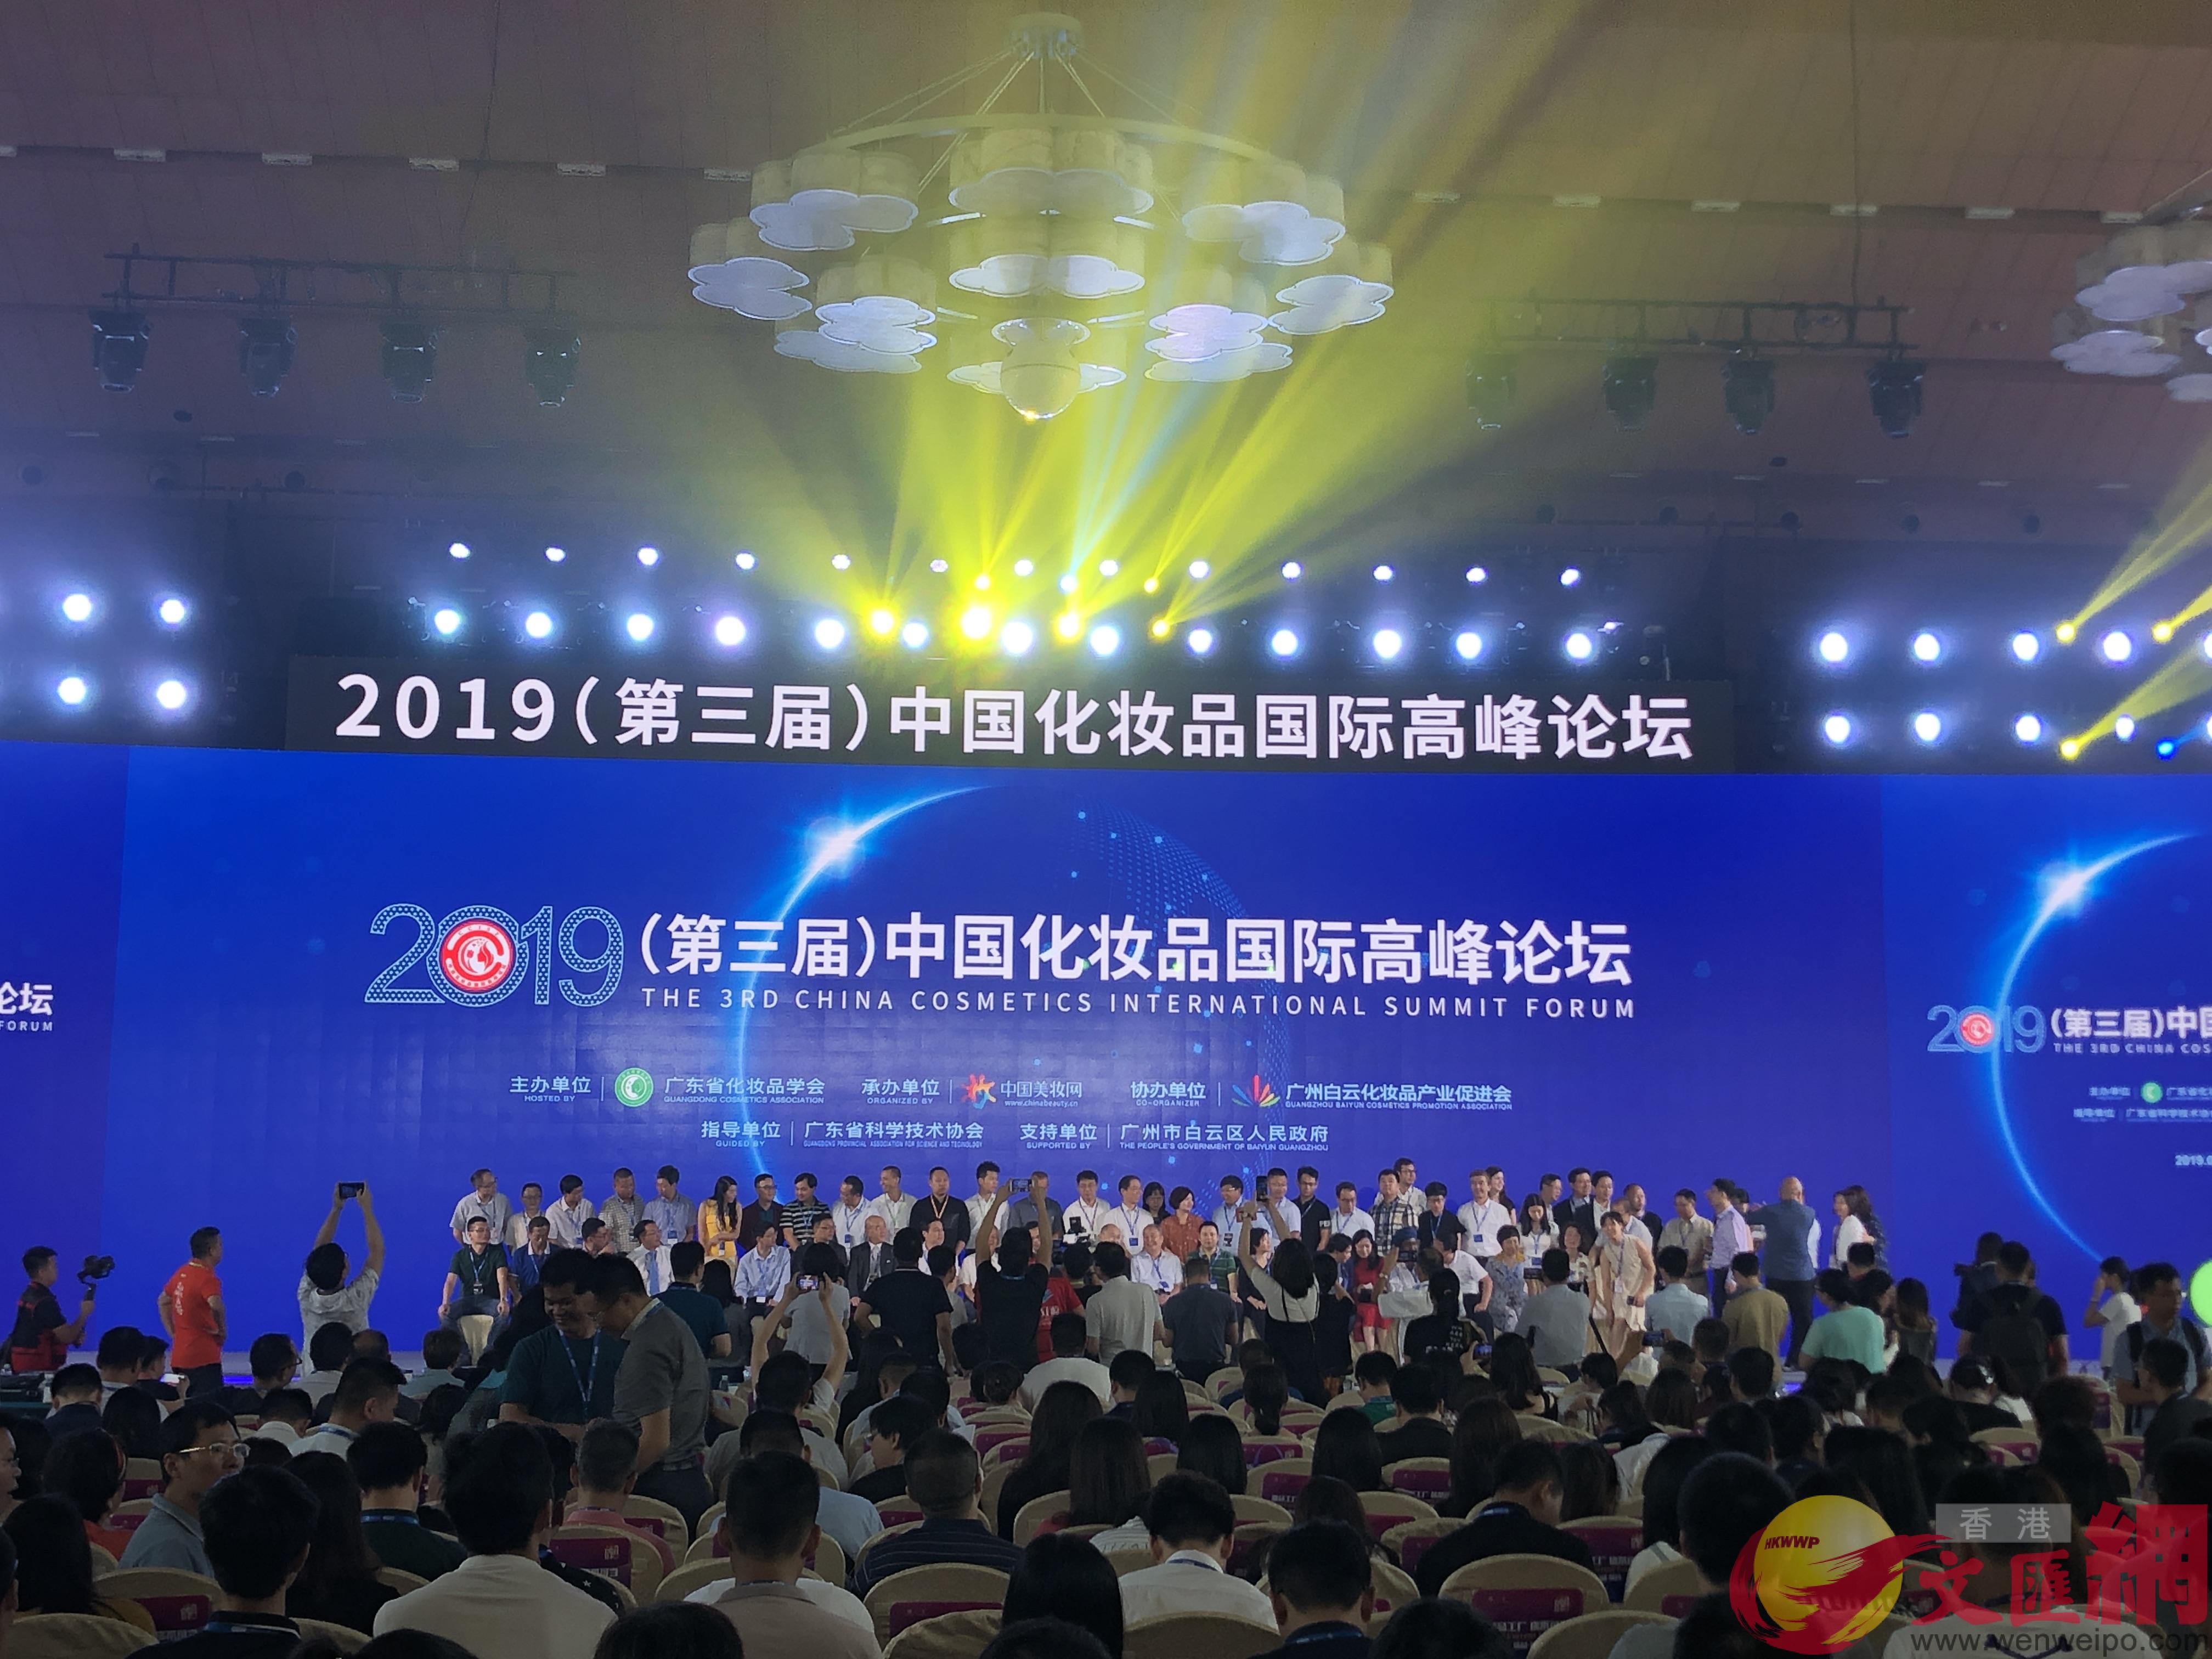 u第三屆中國化妝品國際高峰論壇v在廣州舉行C]方俊明攝^